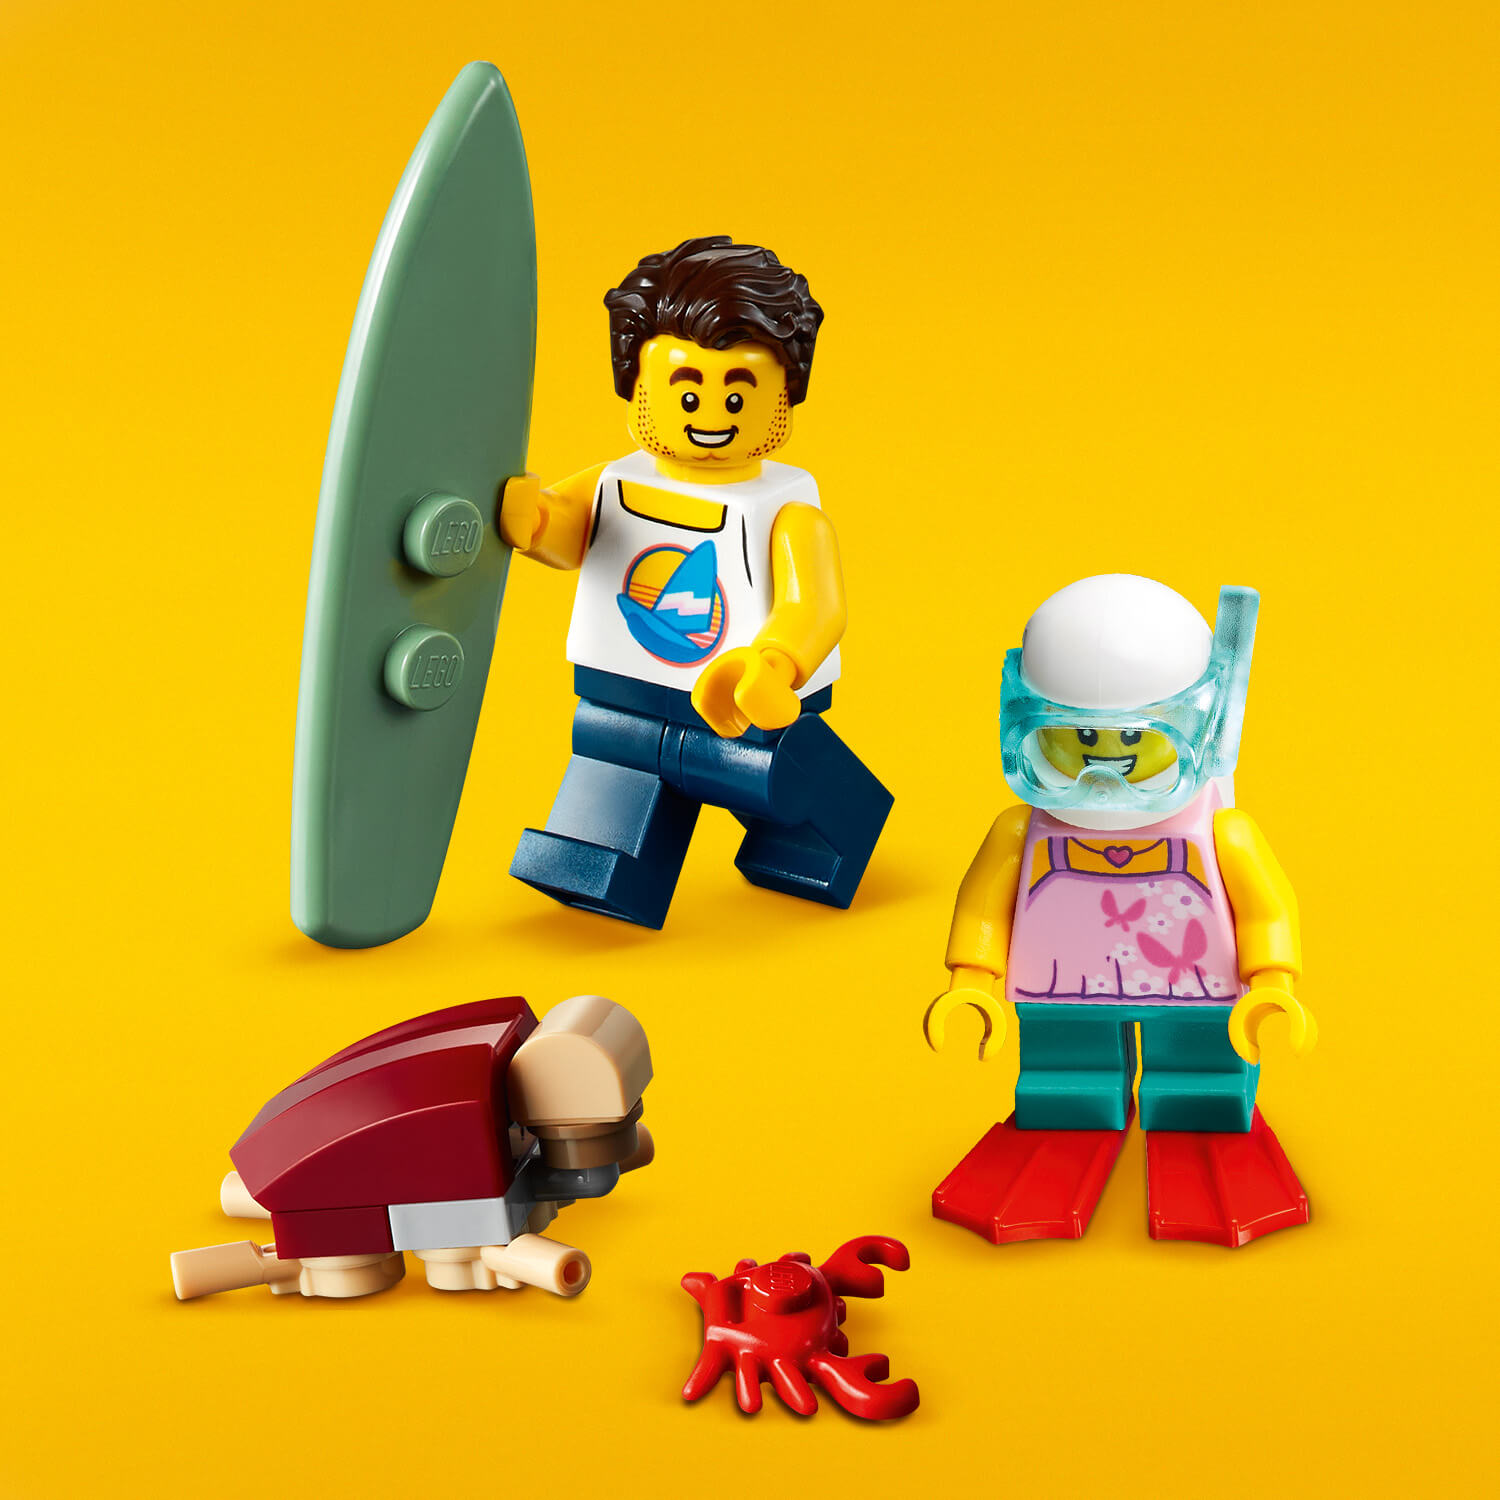 Součástí jsou 2 LEGO® minifigurky